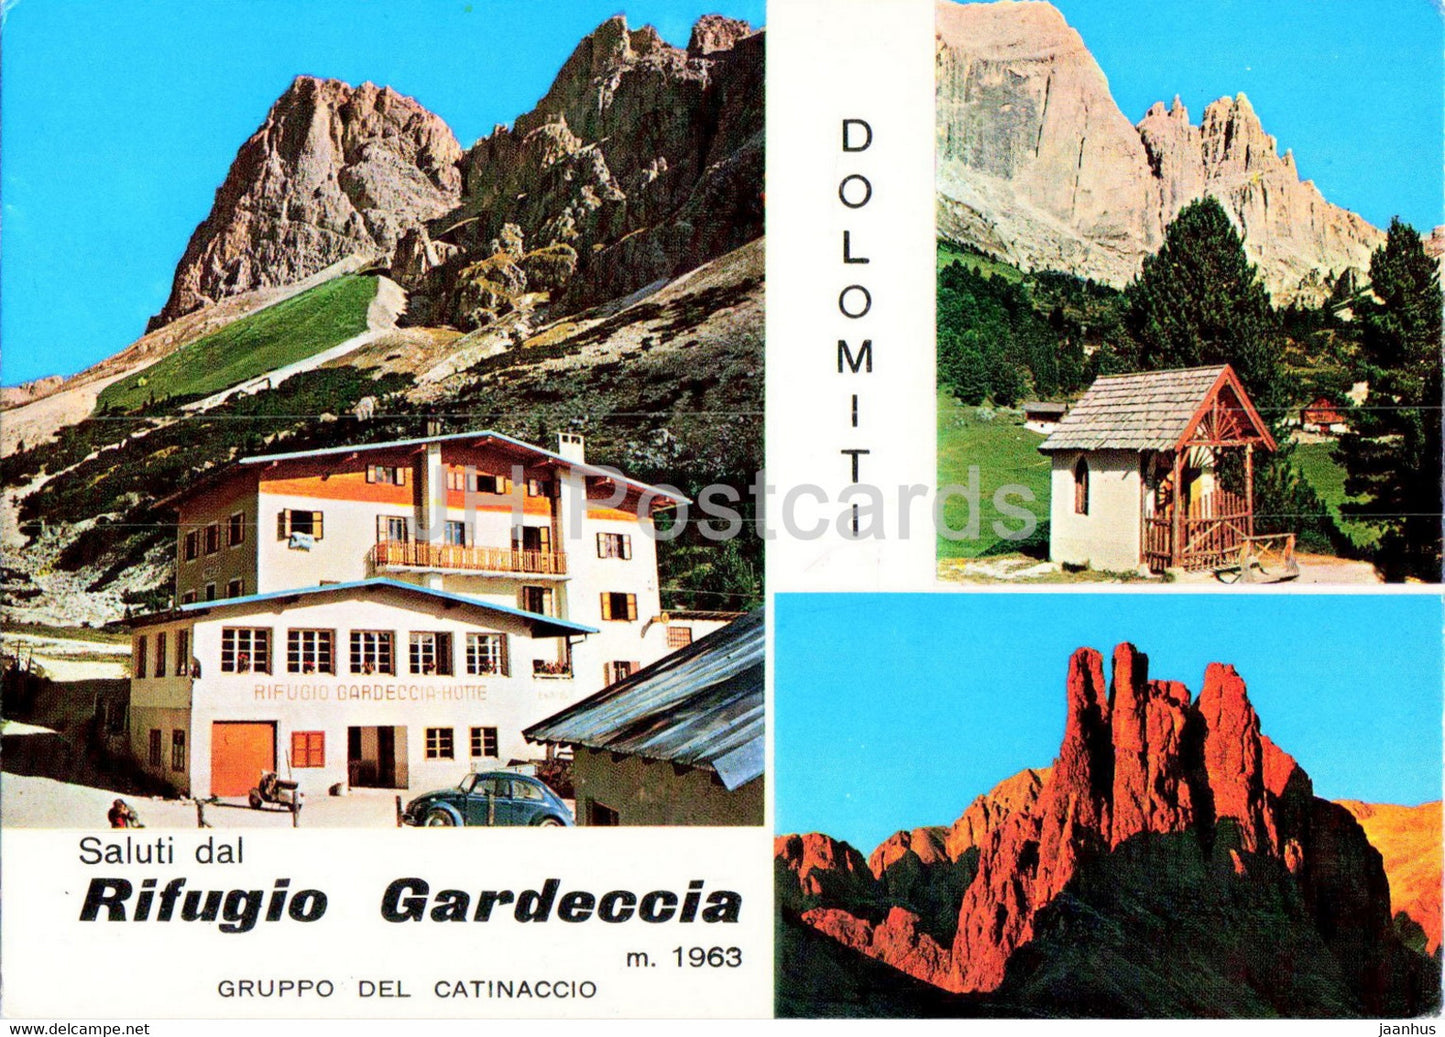 Saluti dal Rifugio Gardeccia - Gruppo del Catinaccio - Italy - unused - JH Postcards